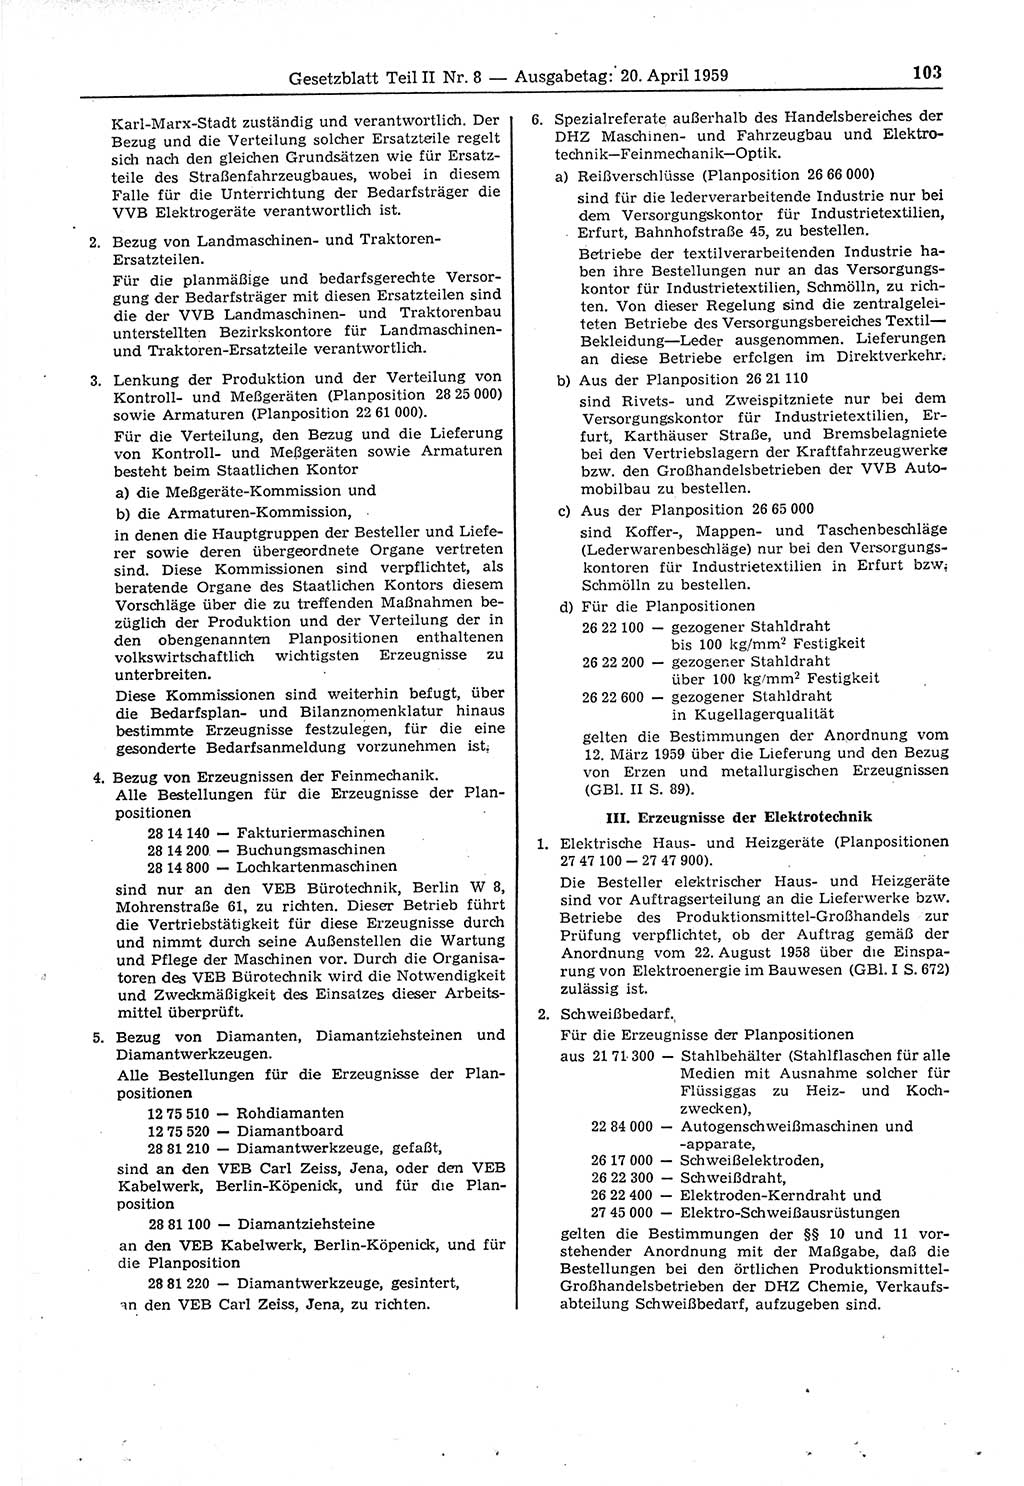 Gesetzblatt (GBl.) der Deutschen Demokratischen Republik (DDR) Teil ⅠⅠ 1959, Seite 103 (GBl. DDR ⅠⅠ 1959, S. 103)